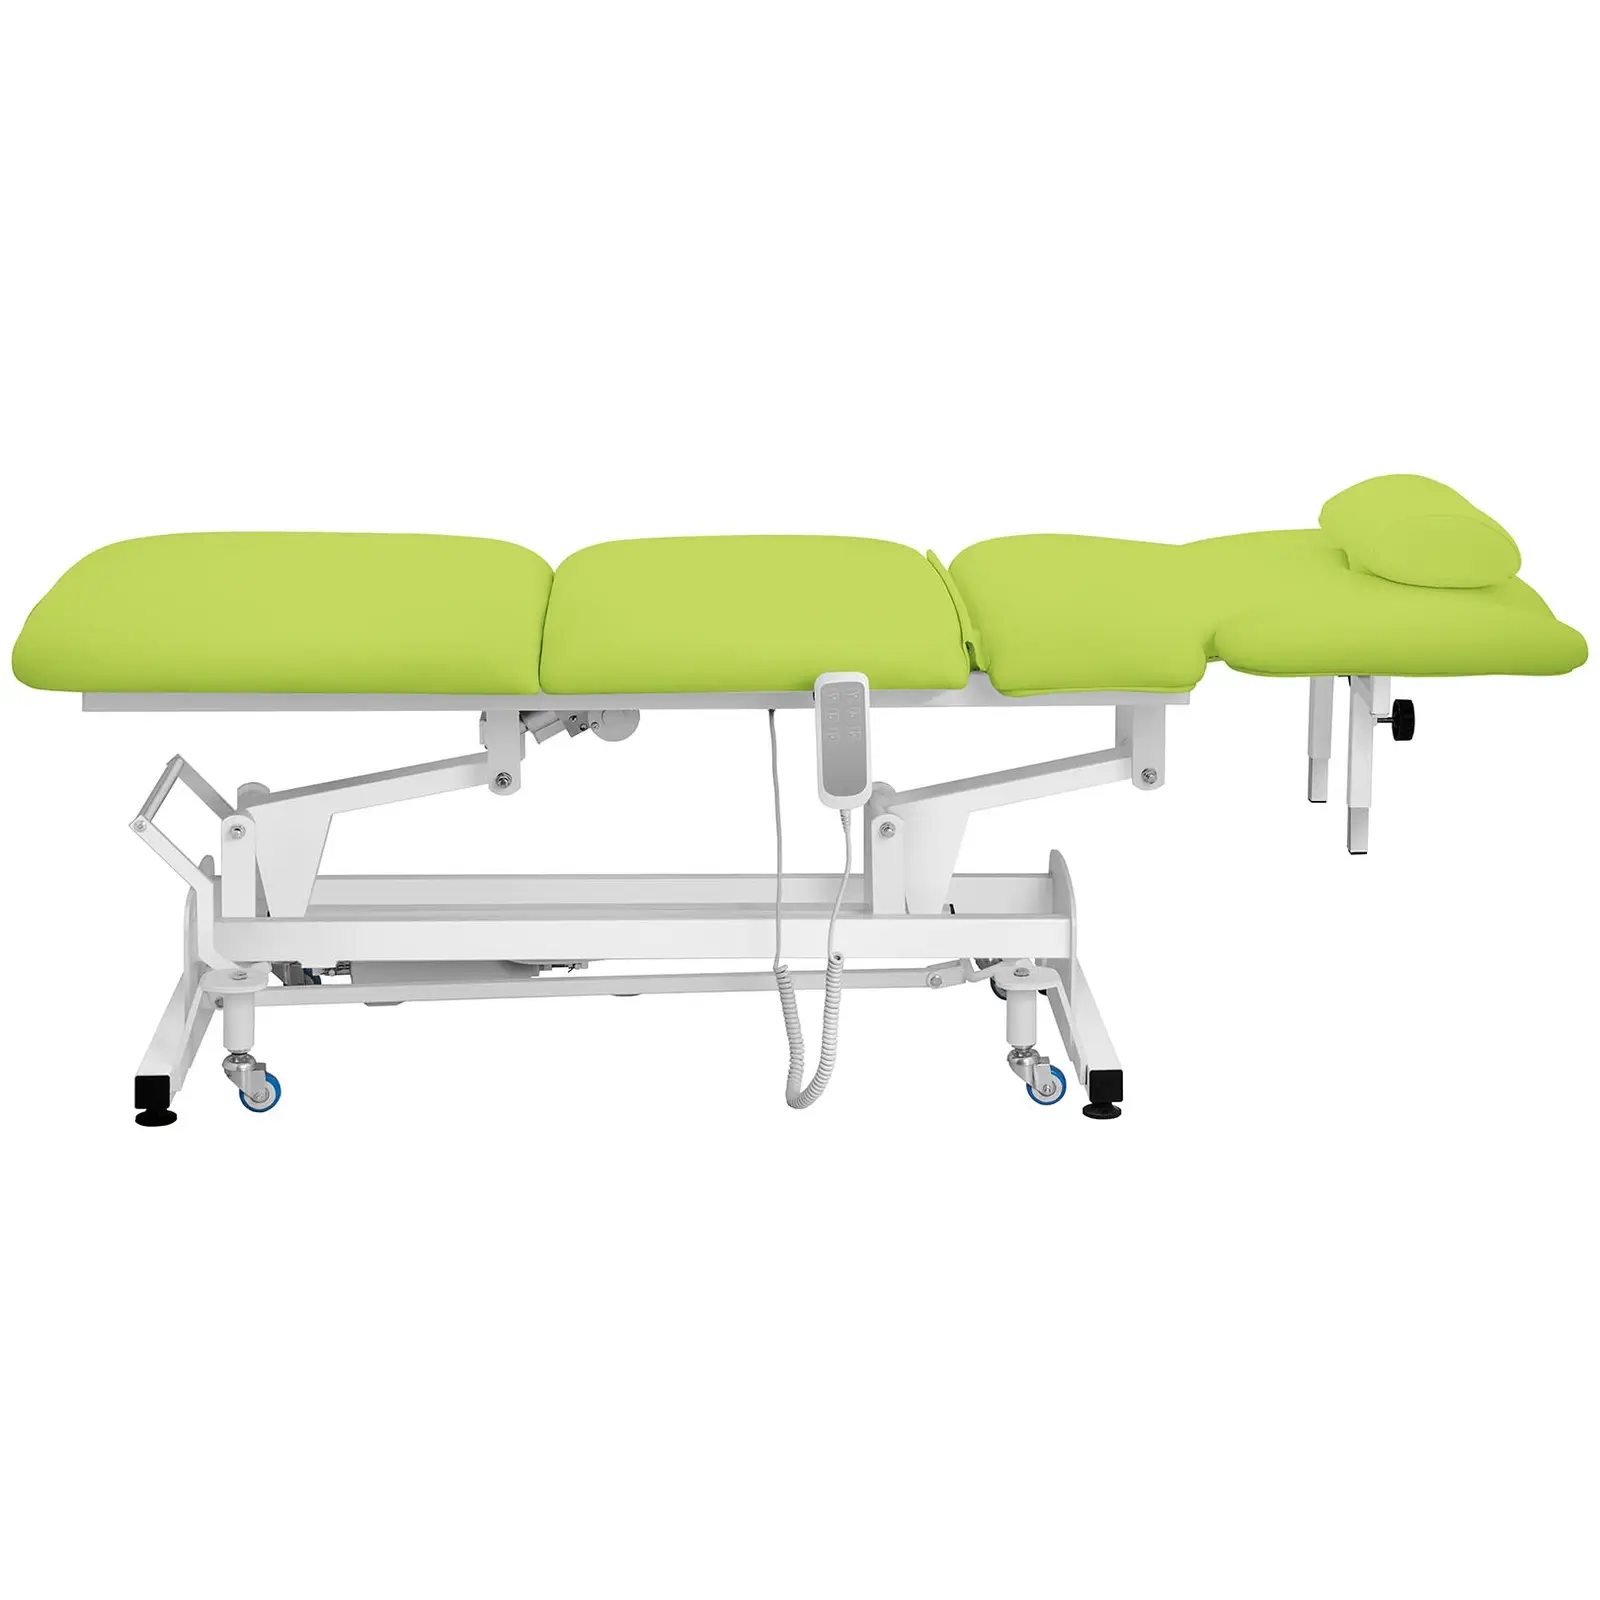 Massageliege elektrisch - 100 W - 200 kg - Green